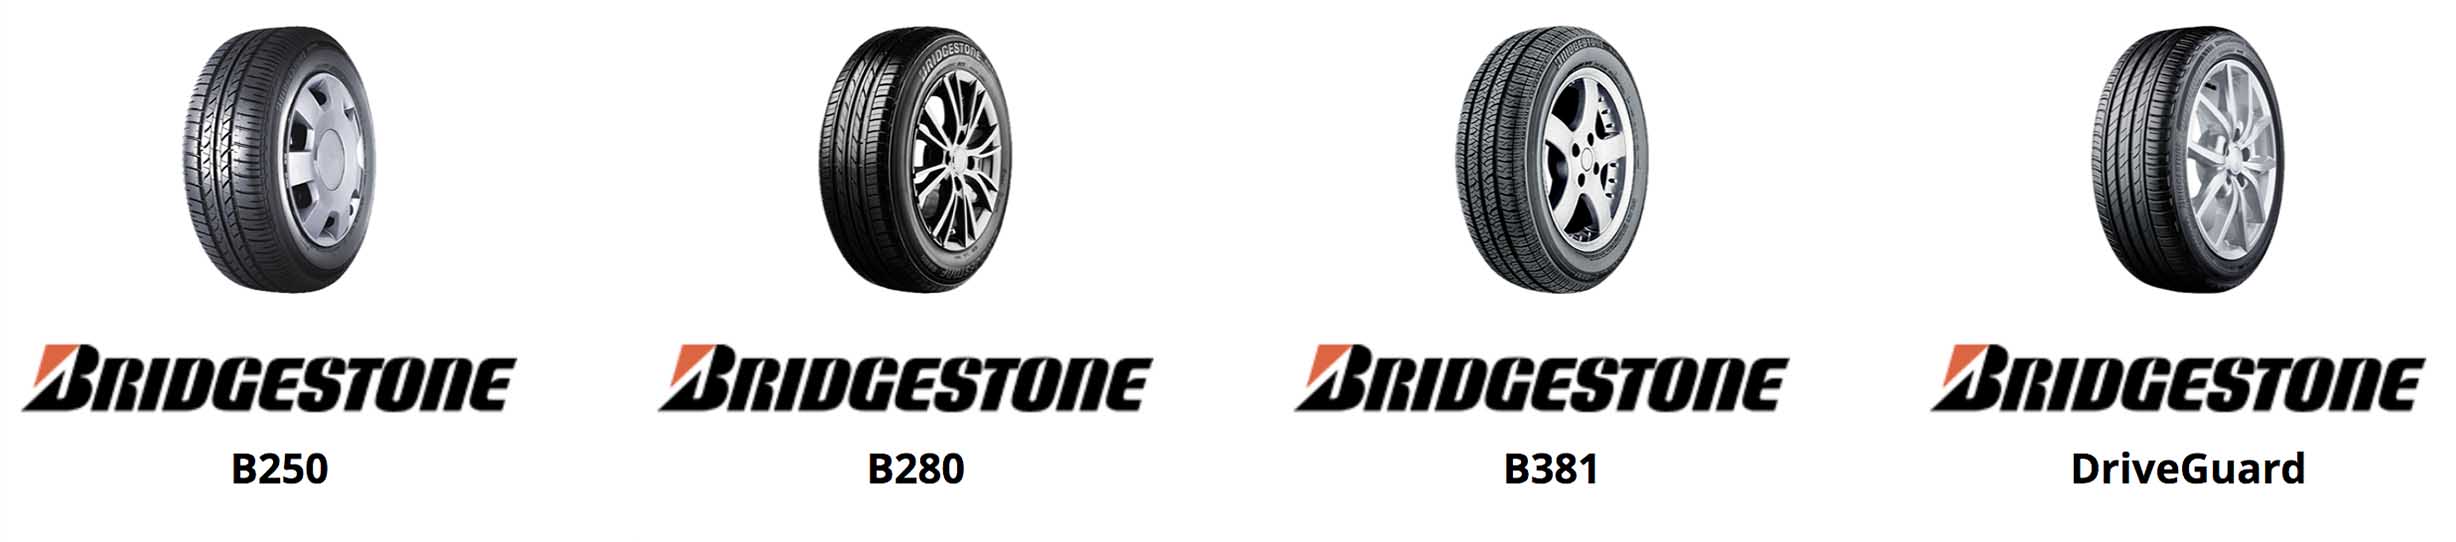 Bridgestone tyres slide cardiff